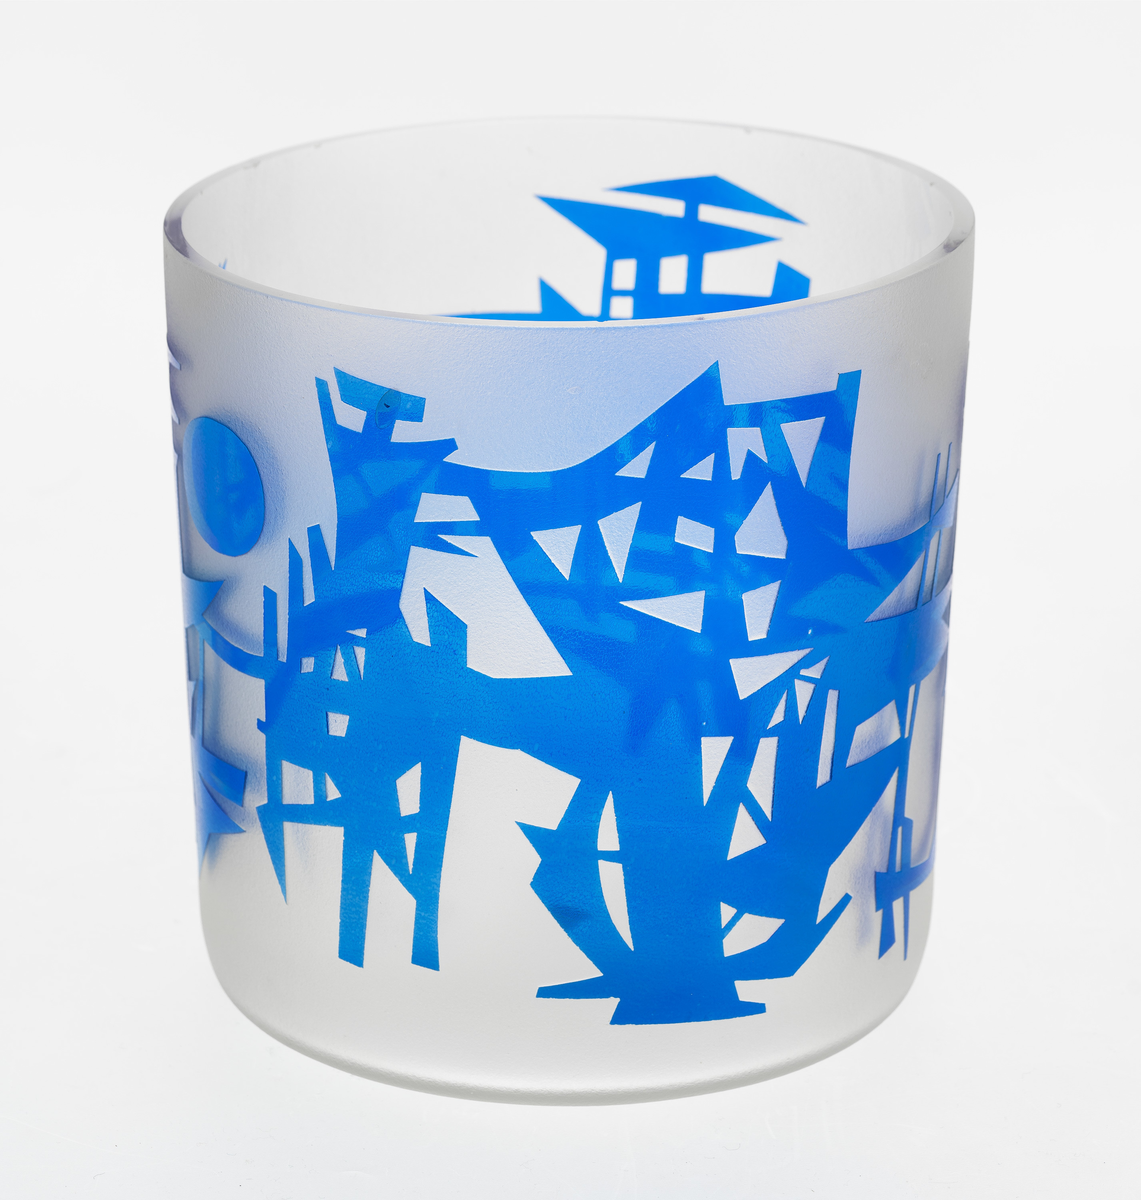 Sylindrisk vase i klart glass som er mattet, og dekorert med et geometrisk blåfarget relieff i overfangsteknikk.